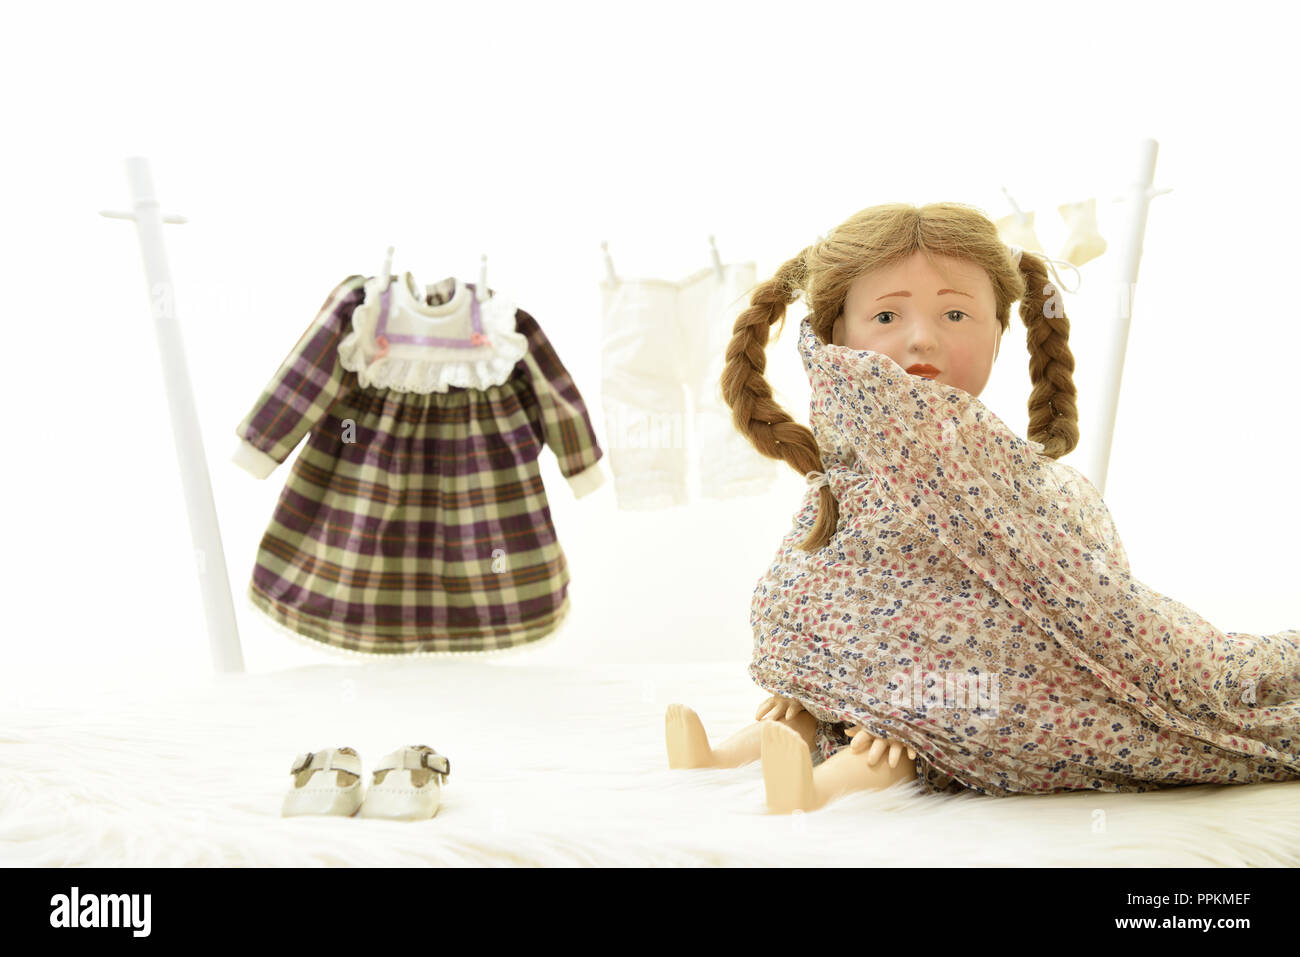 Doll Elise essaie son armure (Allemagne). Puppe Elise hat Wäsche zum trocknen auf eine Wäscheleine gehängt. Banque D'Images